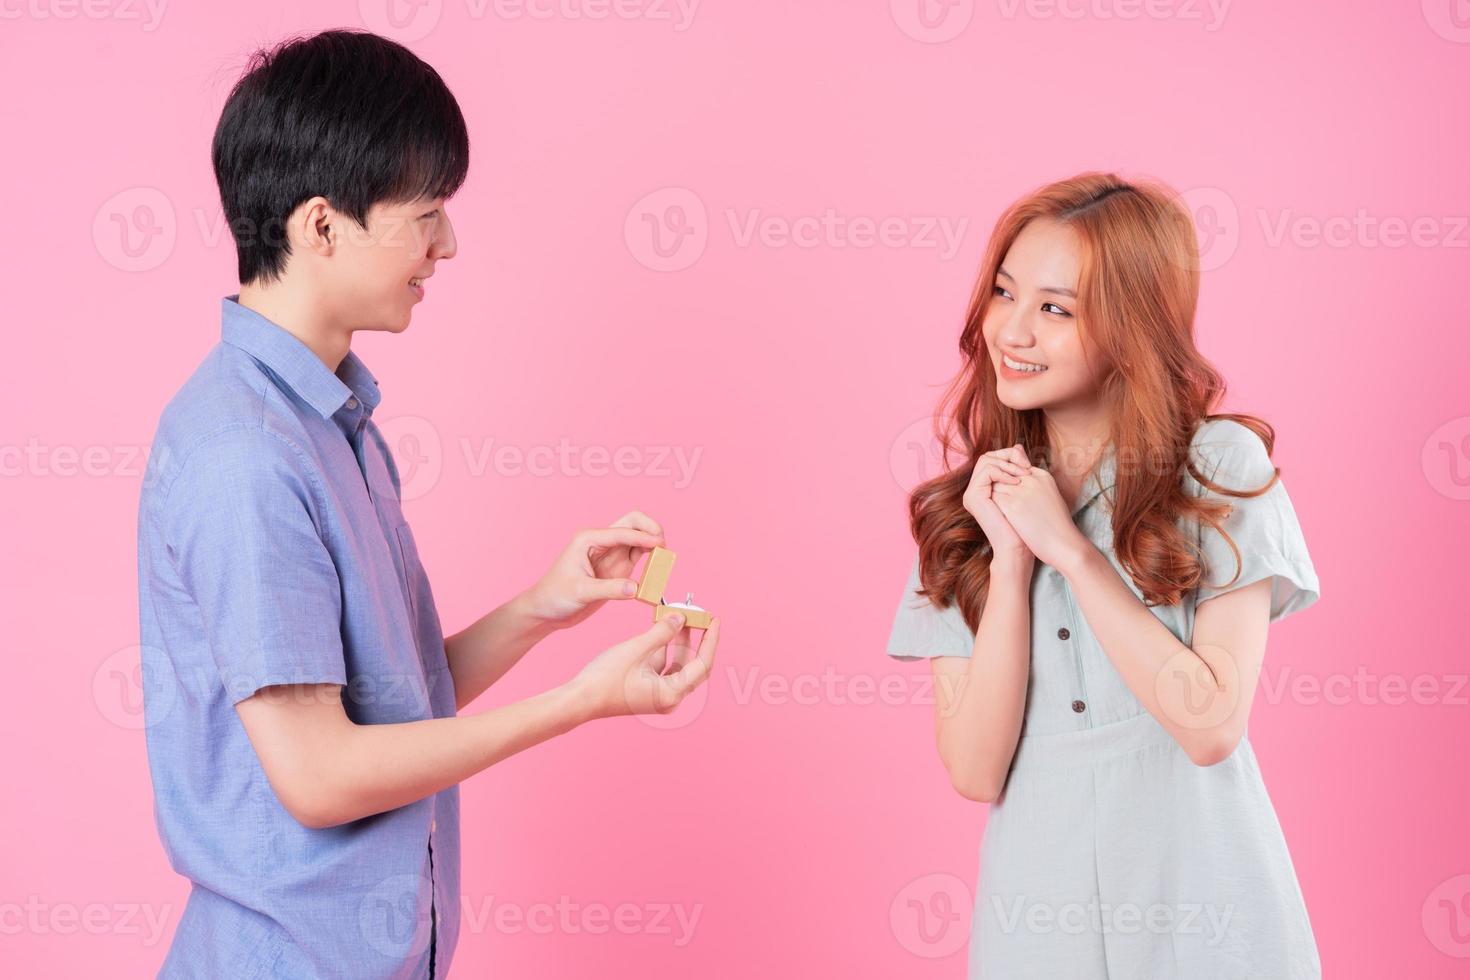 jovem asiático propõe a namorada em um fundo rosa foto